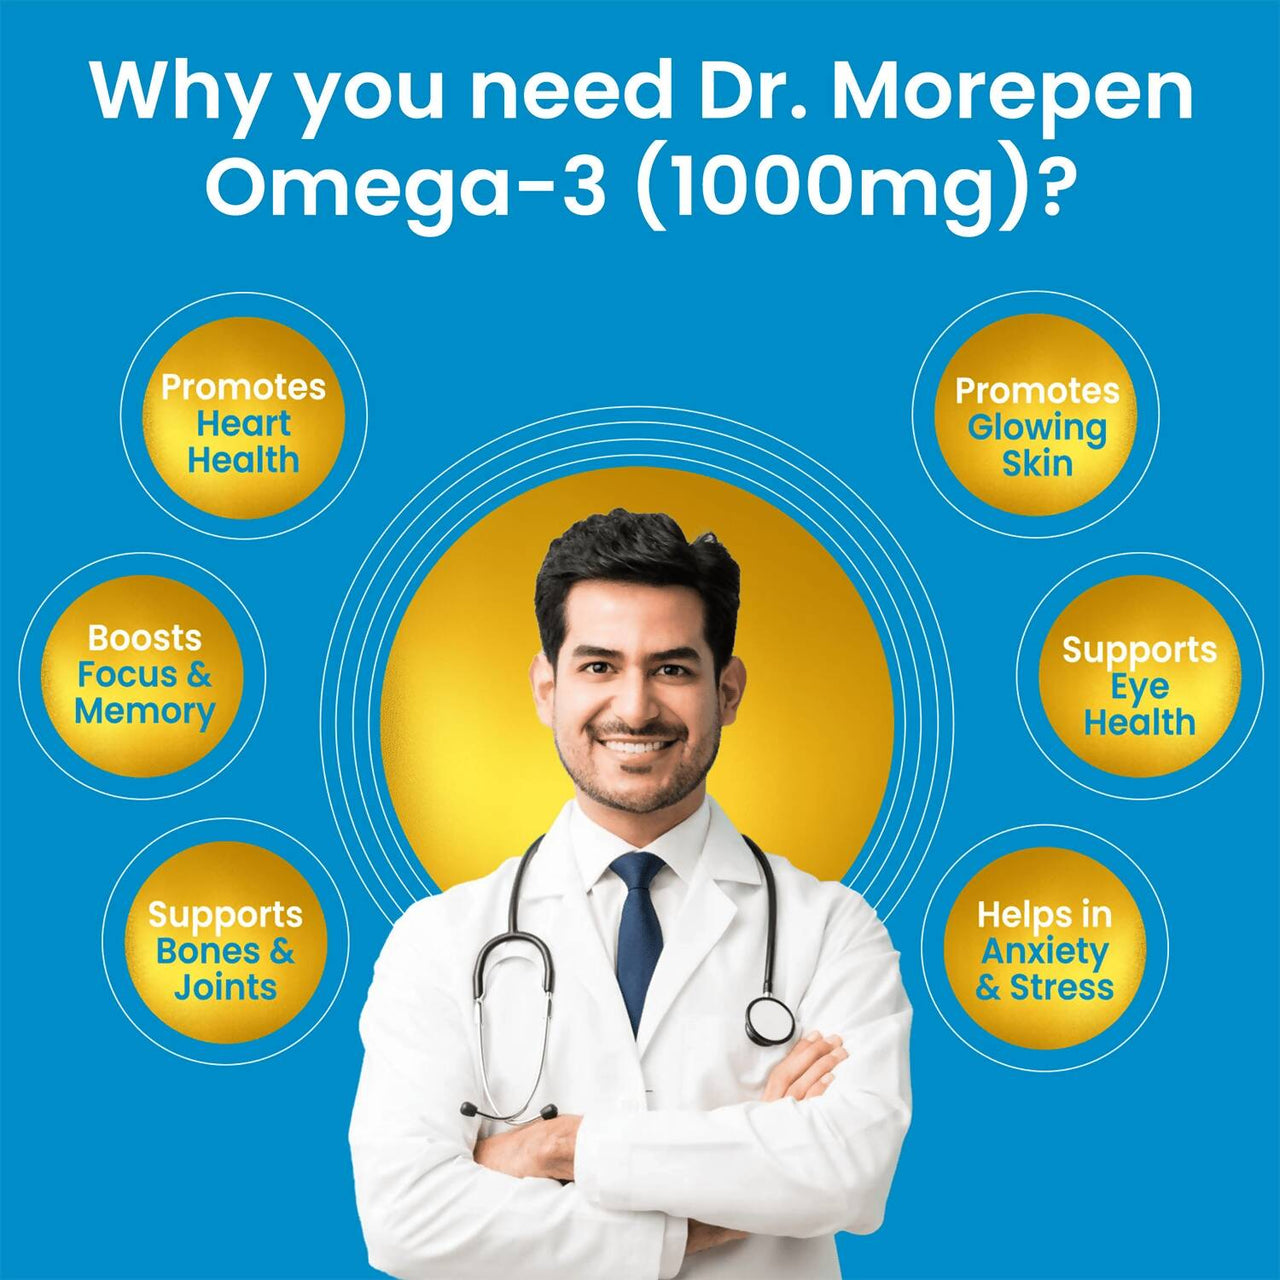 Dr. Morepen Omega 3 Deep Sea Fish Oil Softgels - Distacart